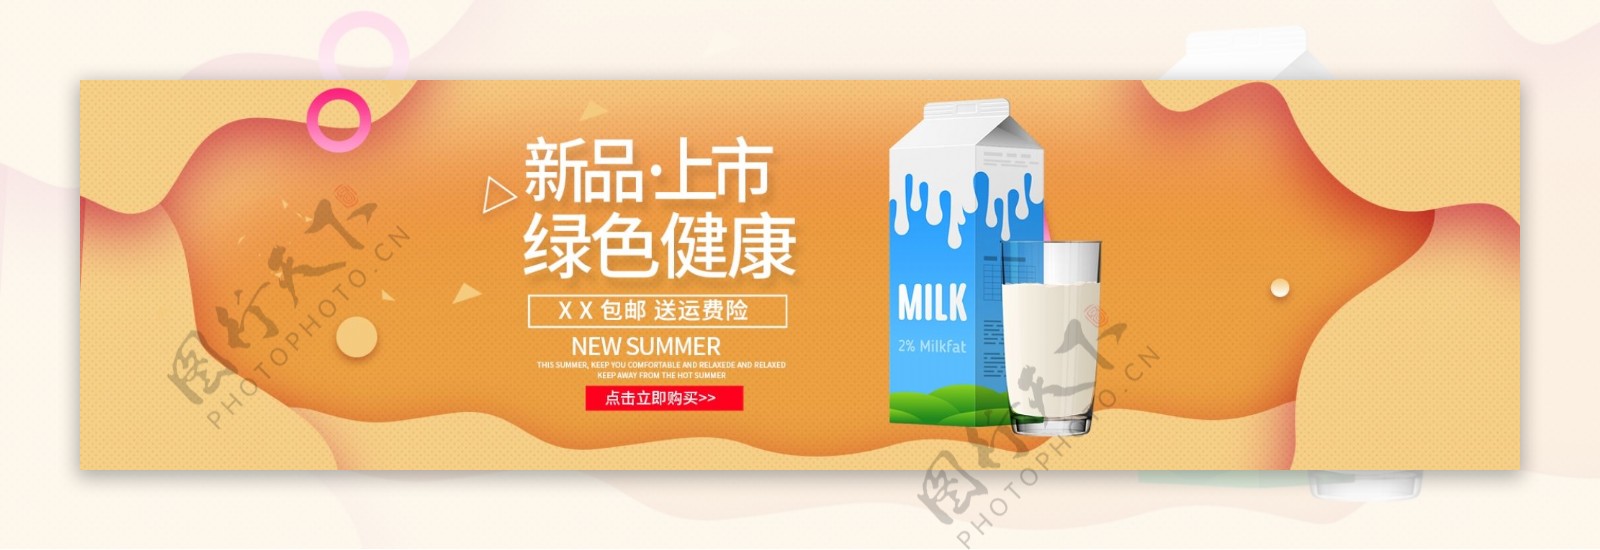 清新简约风牛奶饮料电商海报